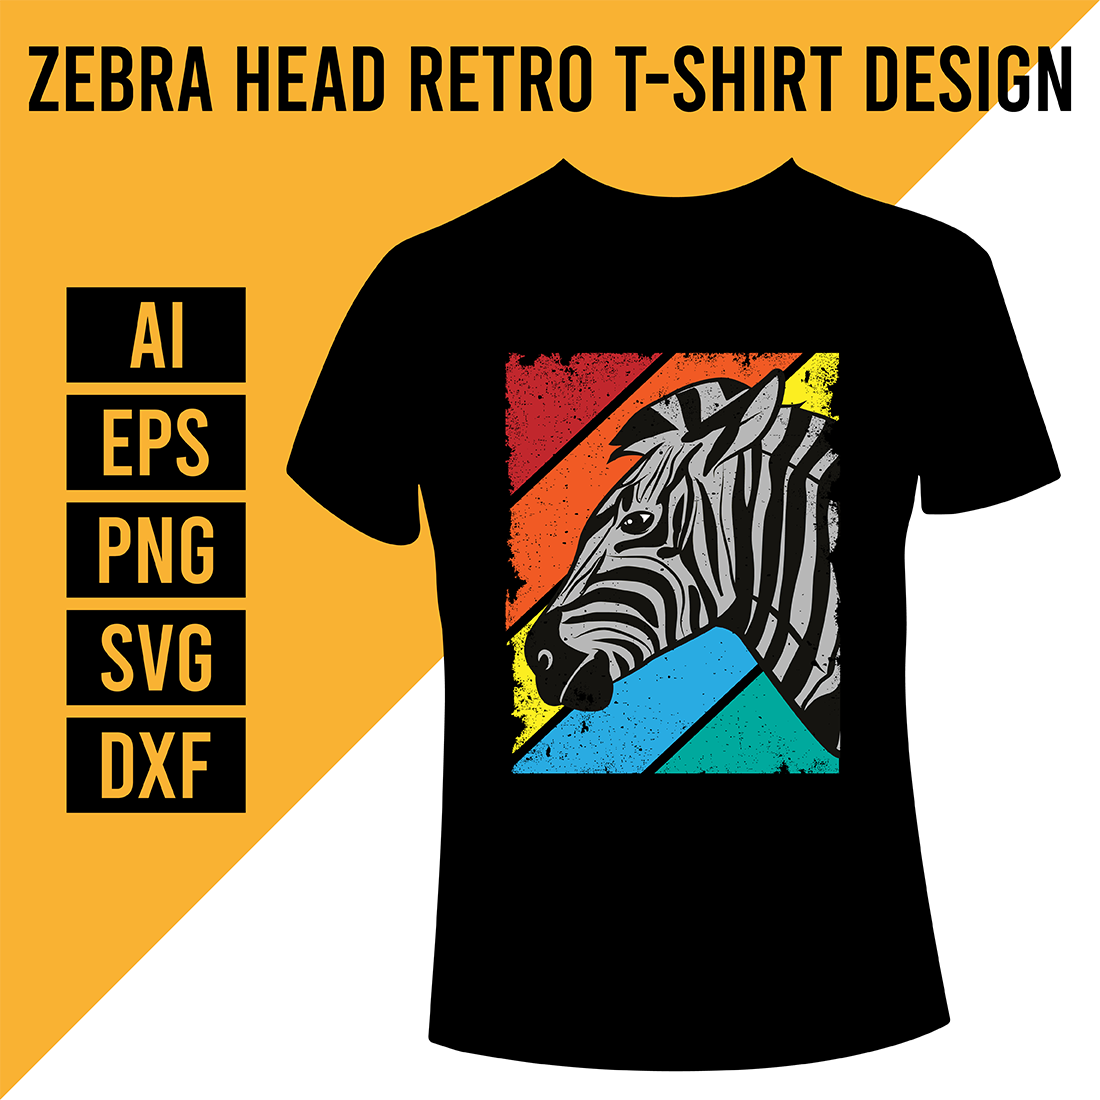 Zebra Head Retro T-Shirt Design cover image.